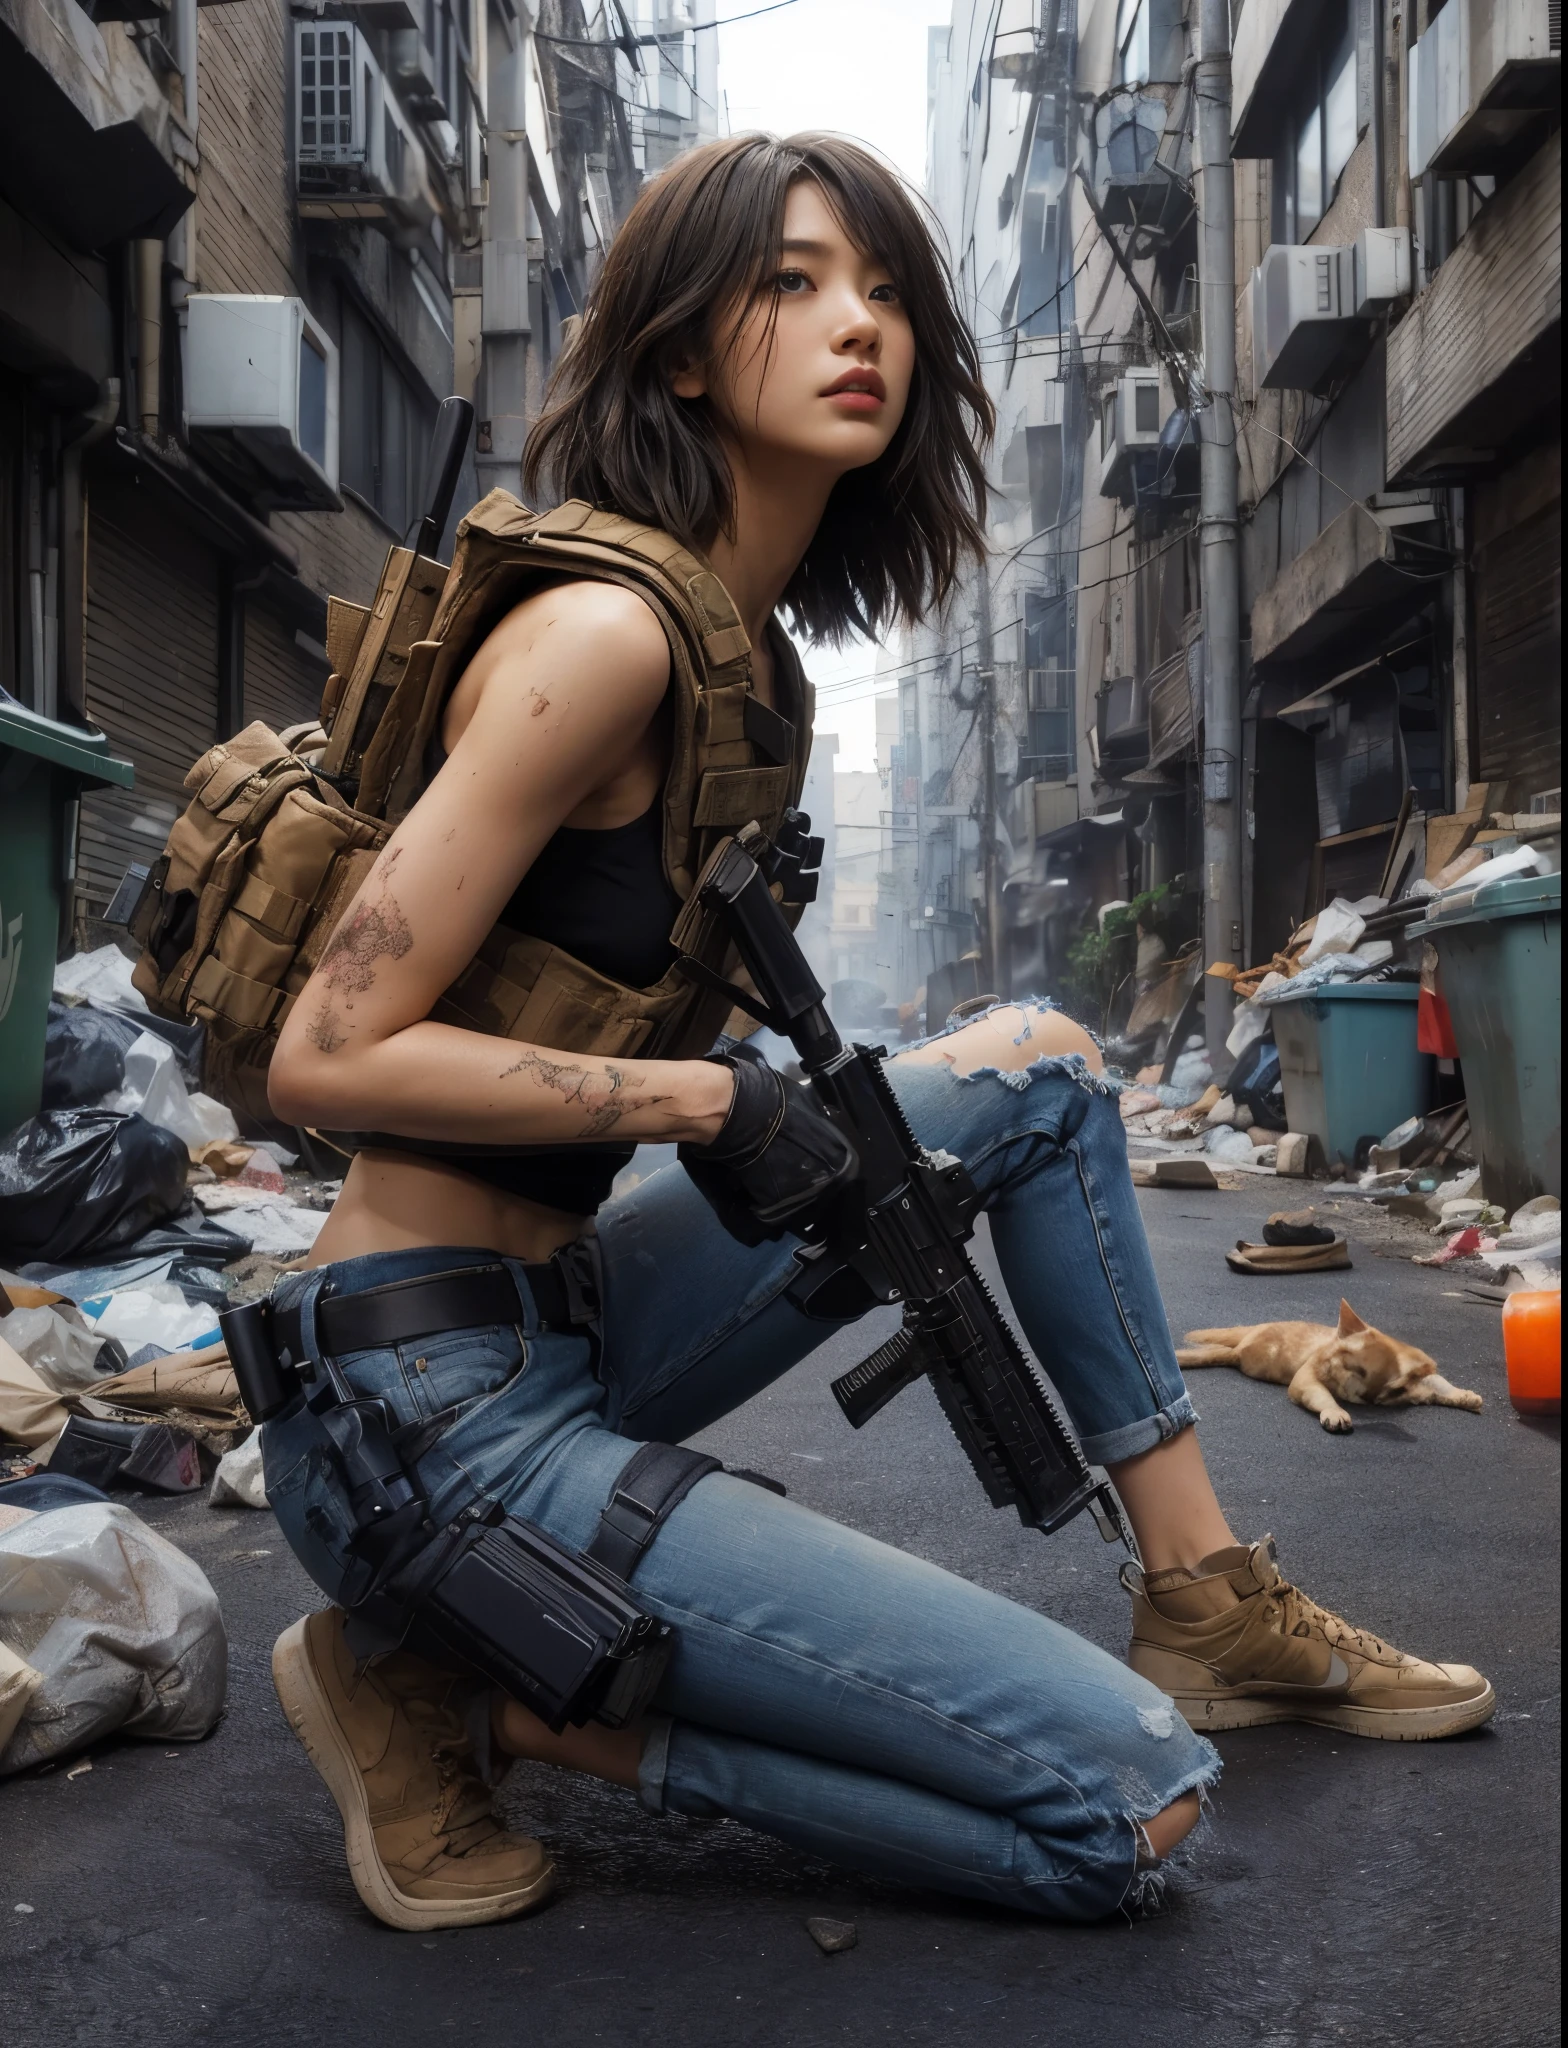  ８케이,현실적인 사진、현실적인 피부 질감、미국에 사는 아름다운 일본 여성들、도시의 뒷골목、거리에 흩어져 있는 쓰레기、쓰레기통、길고양이、더러운 셔츠와 청바지、나이키 에어포스 1 스니커즈、방탄 조끼、자동 소총、짧은 머리、도시전、사건에 연루되다、반격이 시작된다、더럽다、움직이는 액션 포즈、、드라마틱하고 대담한 구성、반신、근육、축소、소설、새&#39;S-EYE 뷰